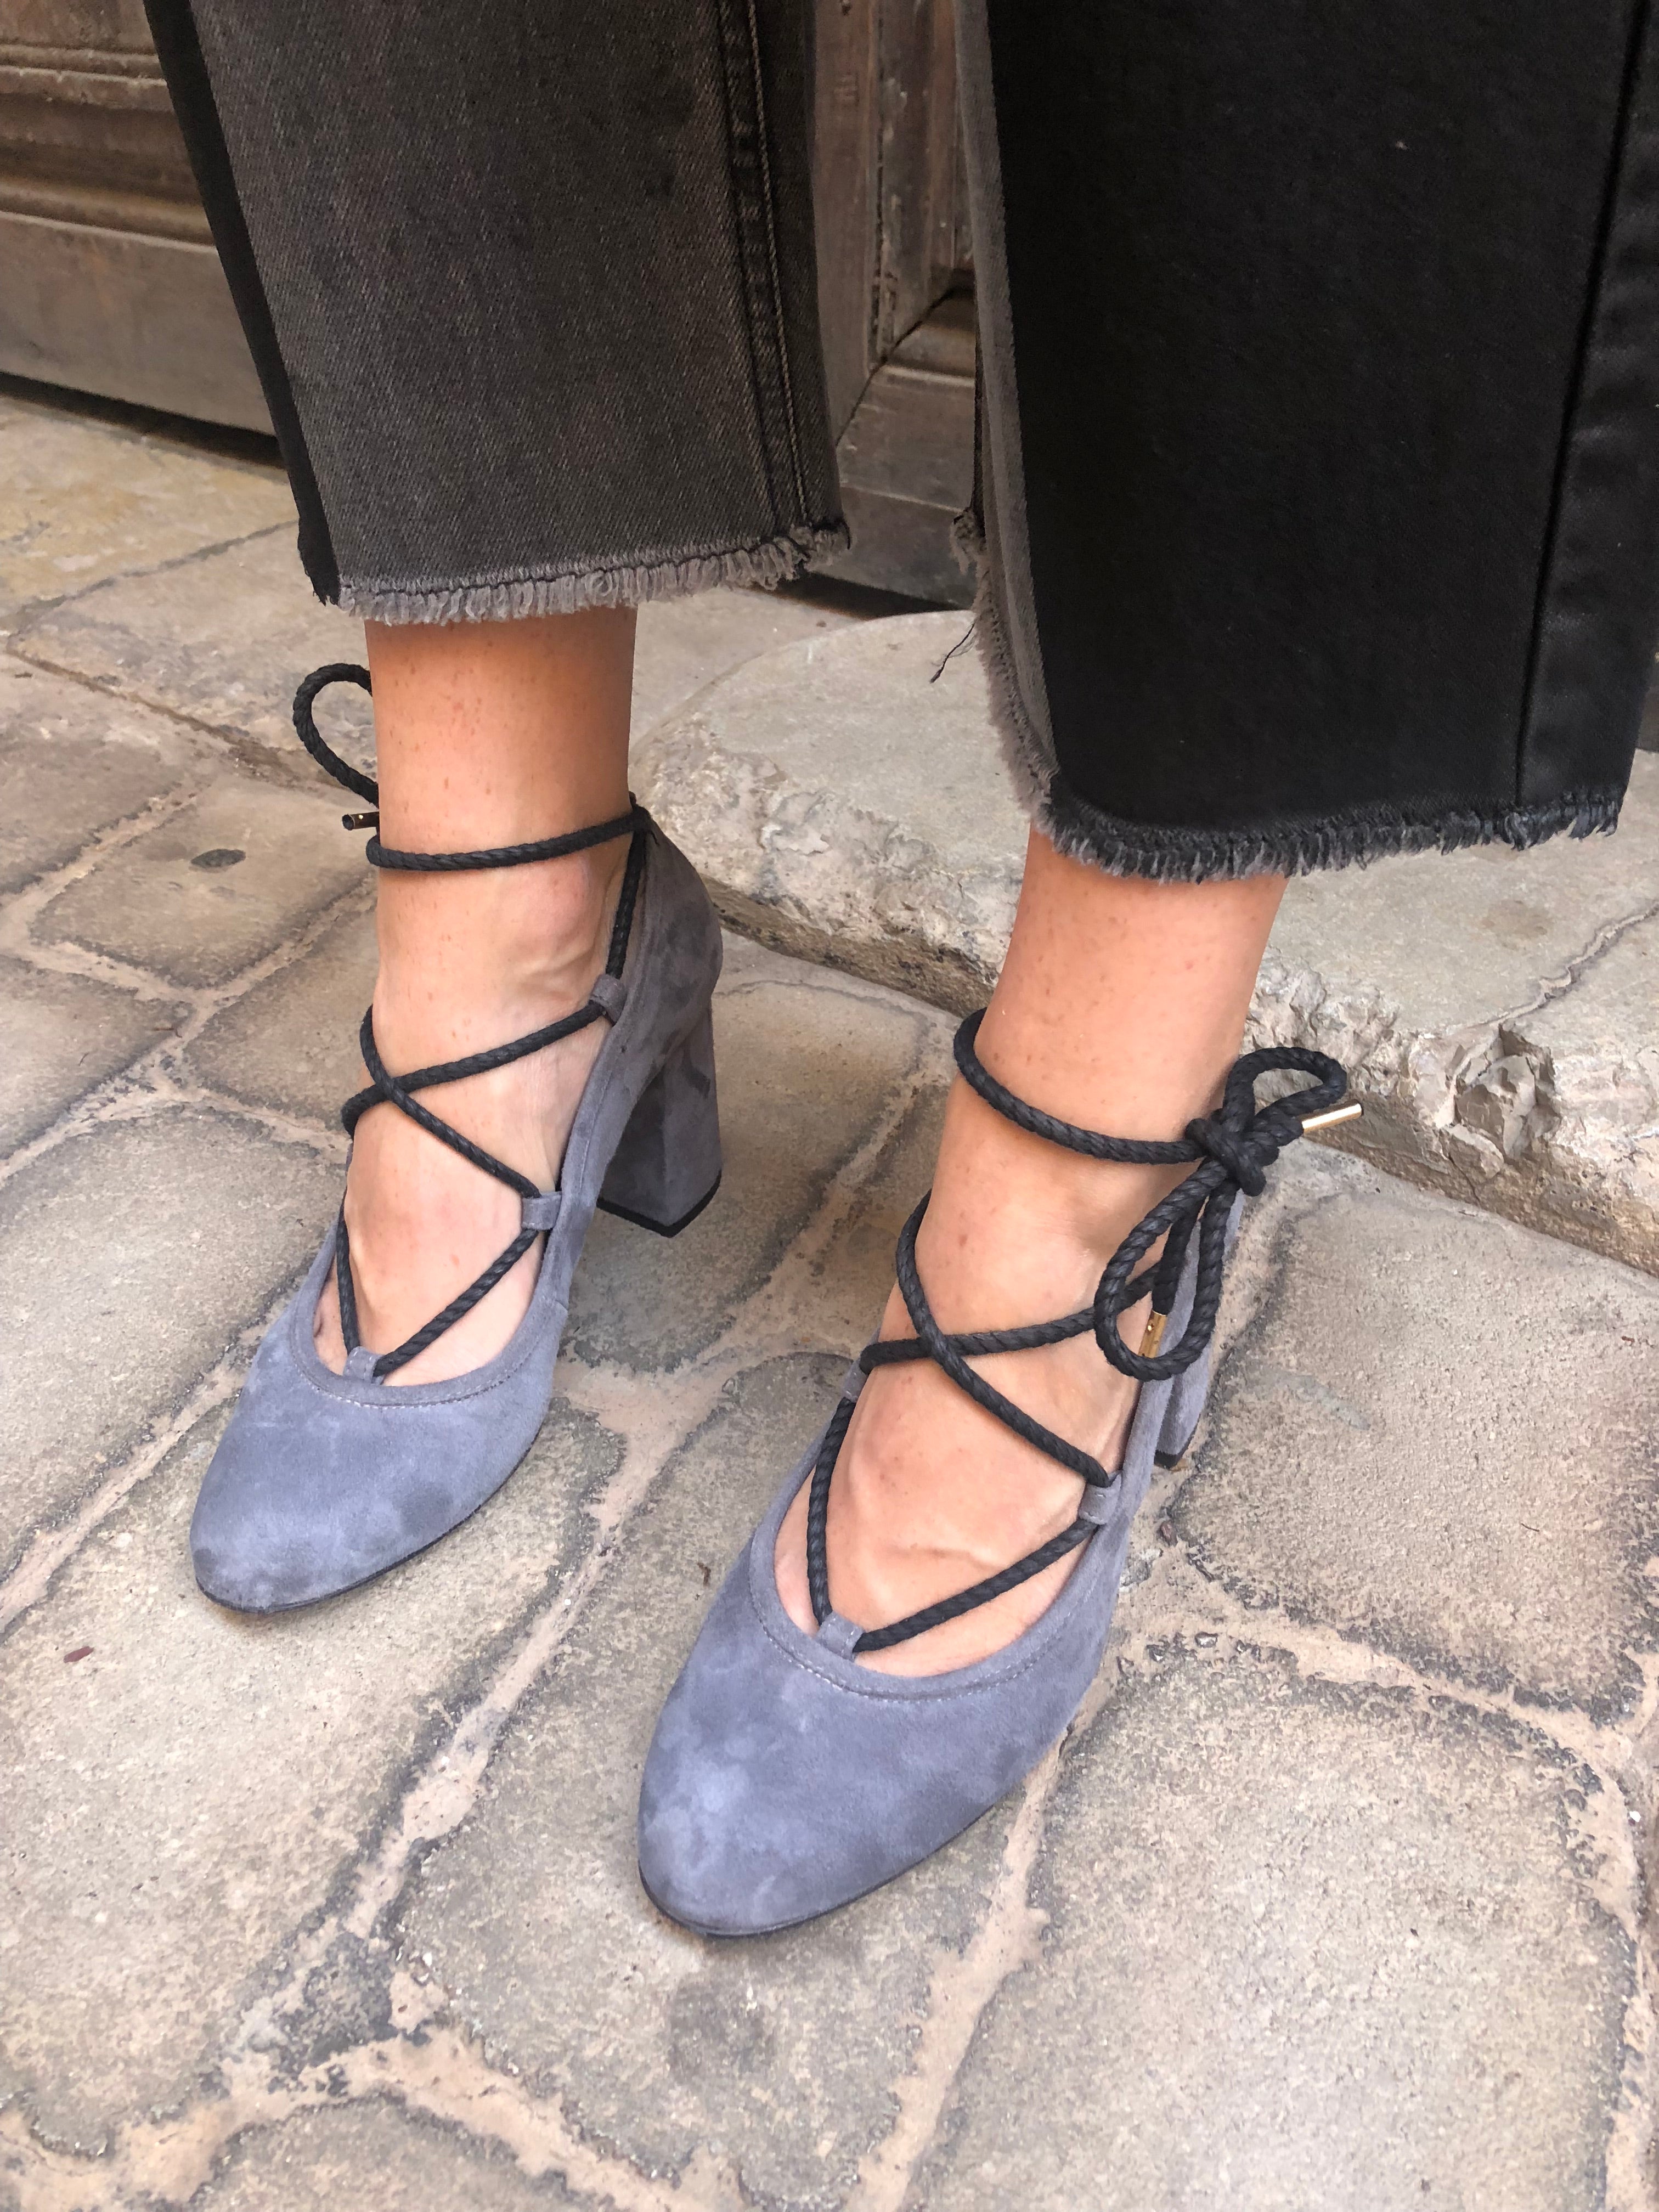 Piluca Gray suede block heel pumps with contrasting tie